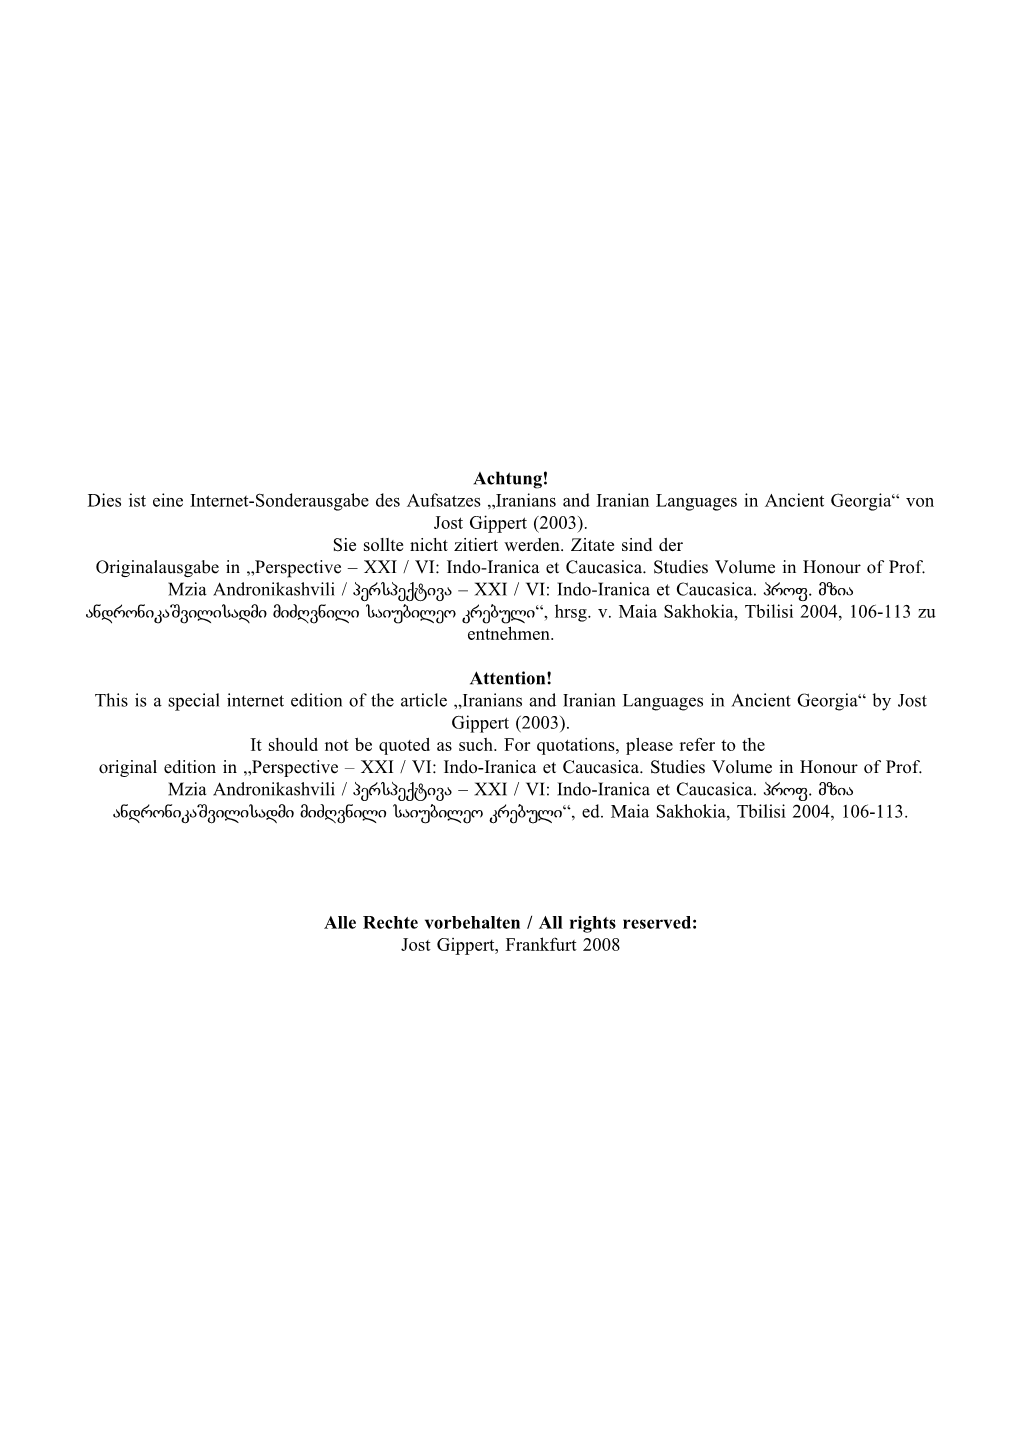 Achtung! Dies Ist Eine Internet-Sonderausgabe Des Aufsatzes „Iranians and Iranian Languages in Ancient Georgia“ Von Jost Gippert (2003)